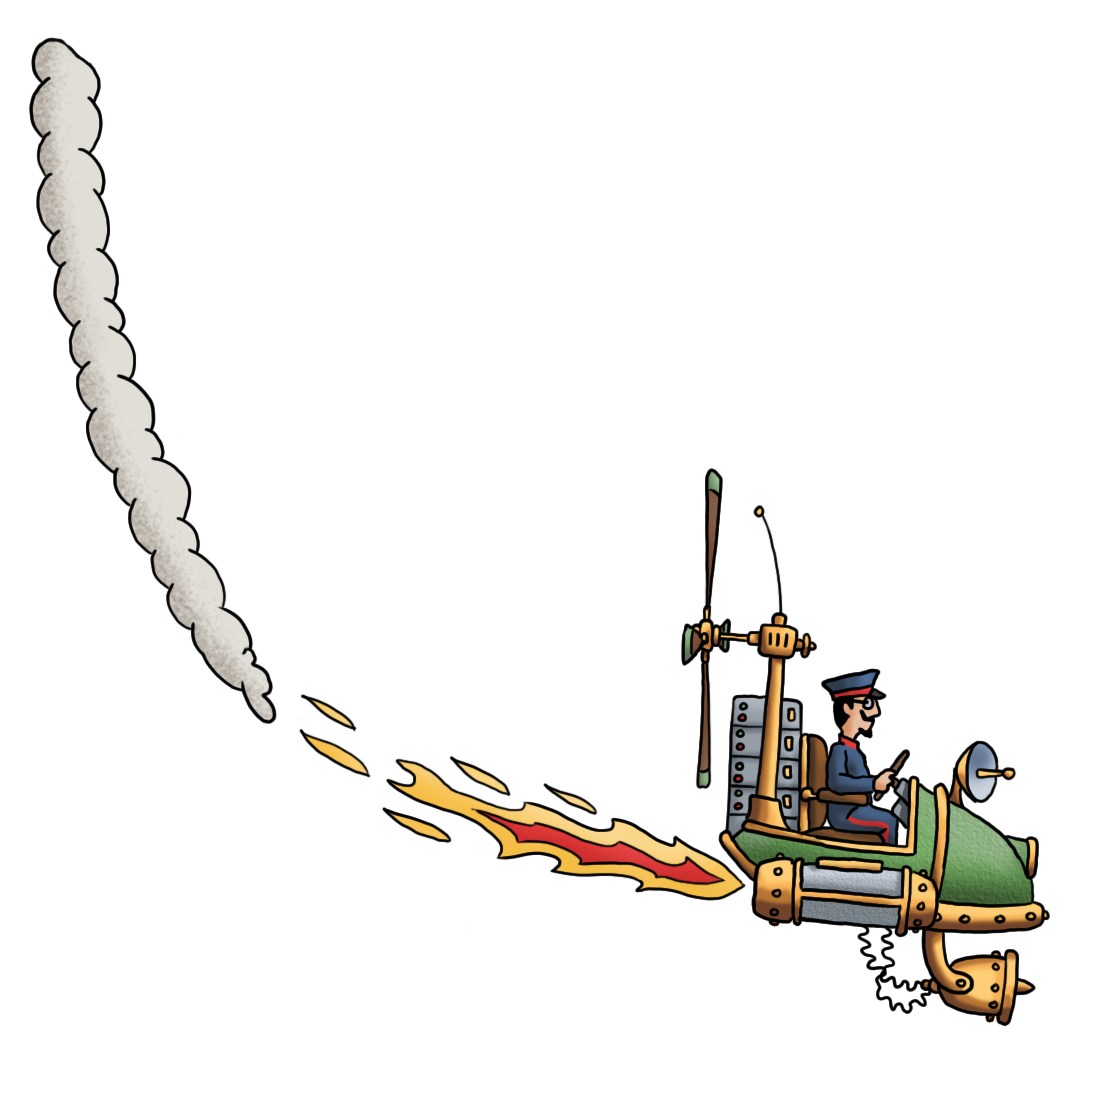 Der Flieger des Flying Circus zeigt ein düsengetriebenes Fluggerät im Steampunk-Stil